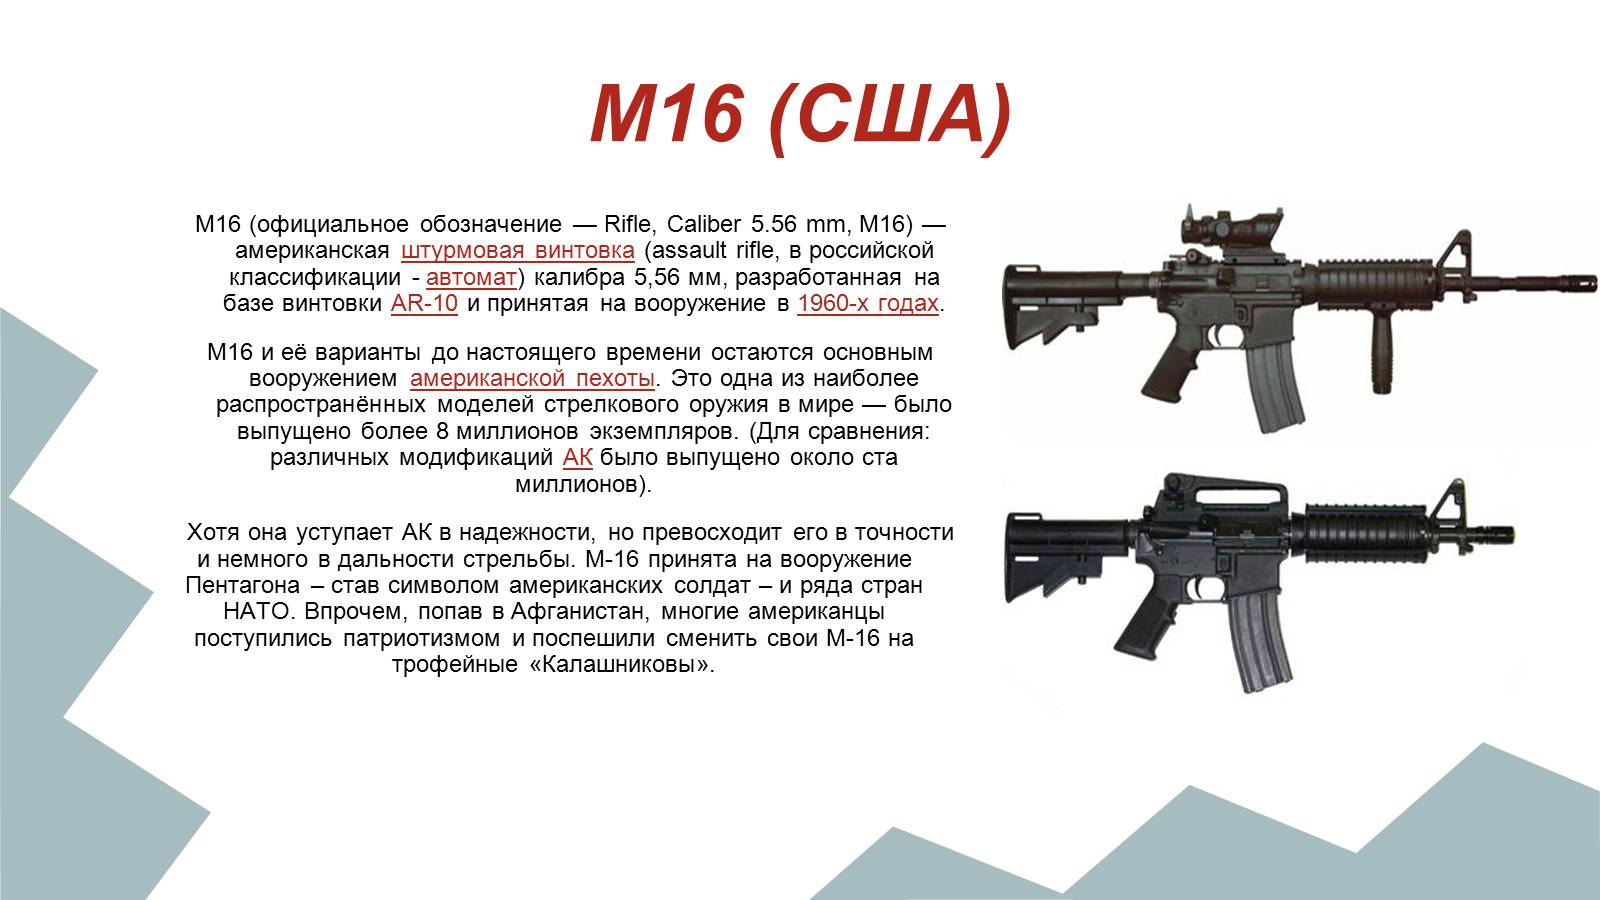 М 16 в россии. Штурмовая винтовка м16 последняя версия. М-16 автомат Калибр. Калибр штурмовой винтовки м16…. М-16 автомат ТТХ.